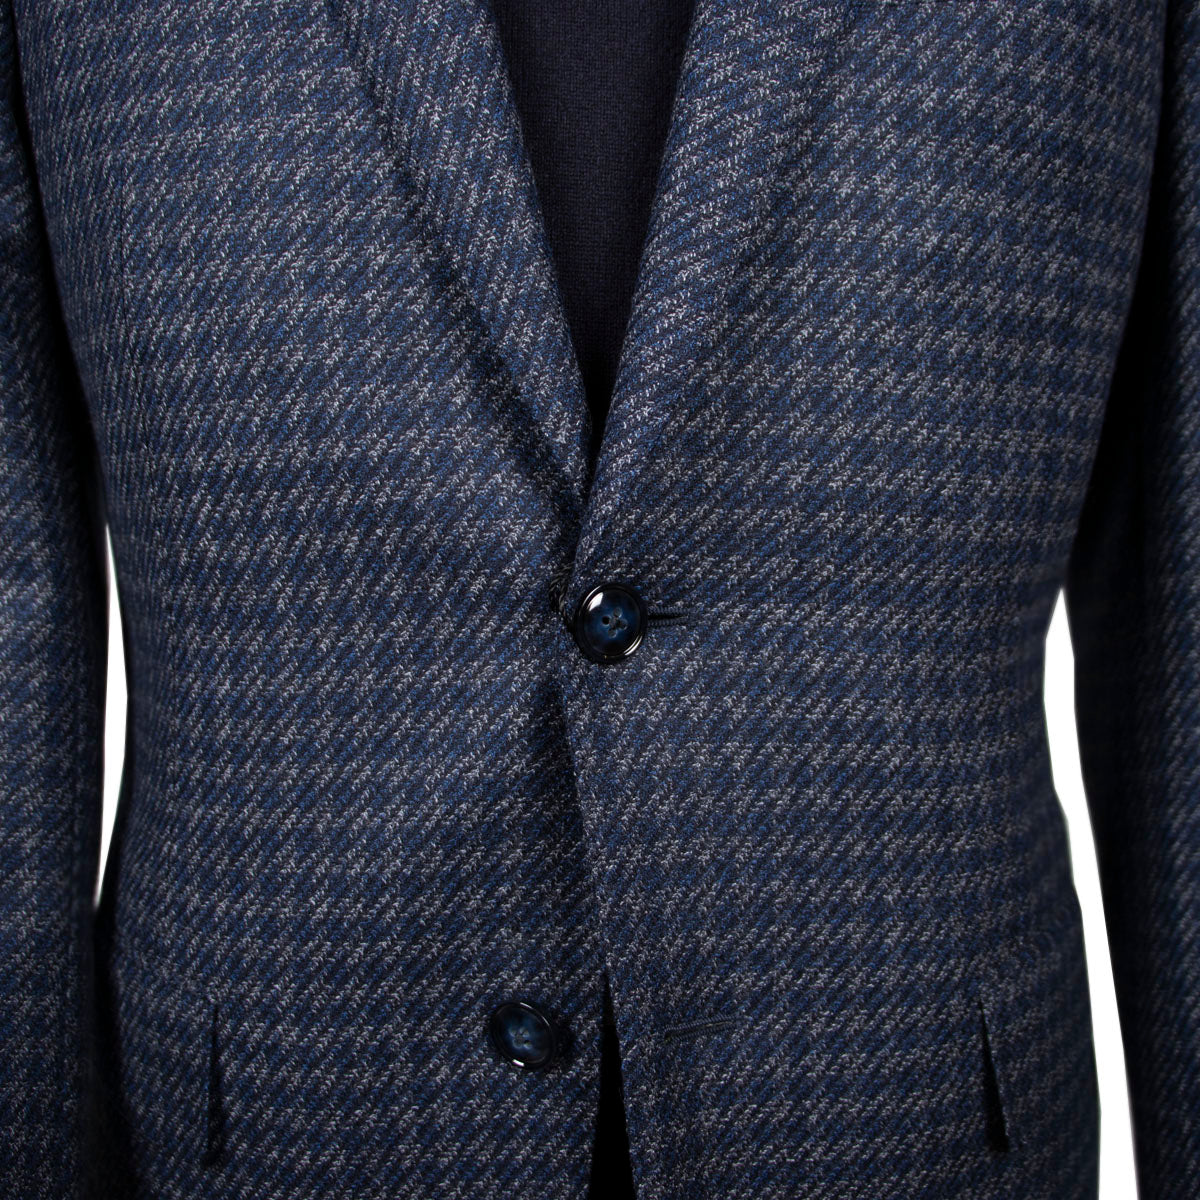 Navy & Grey Twill Pure Wool Jacket  Robert Old   